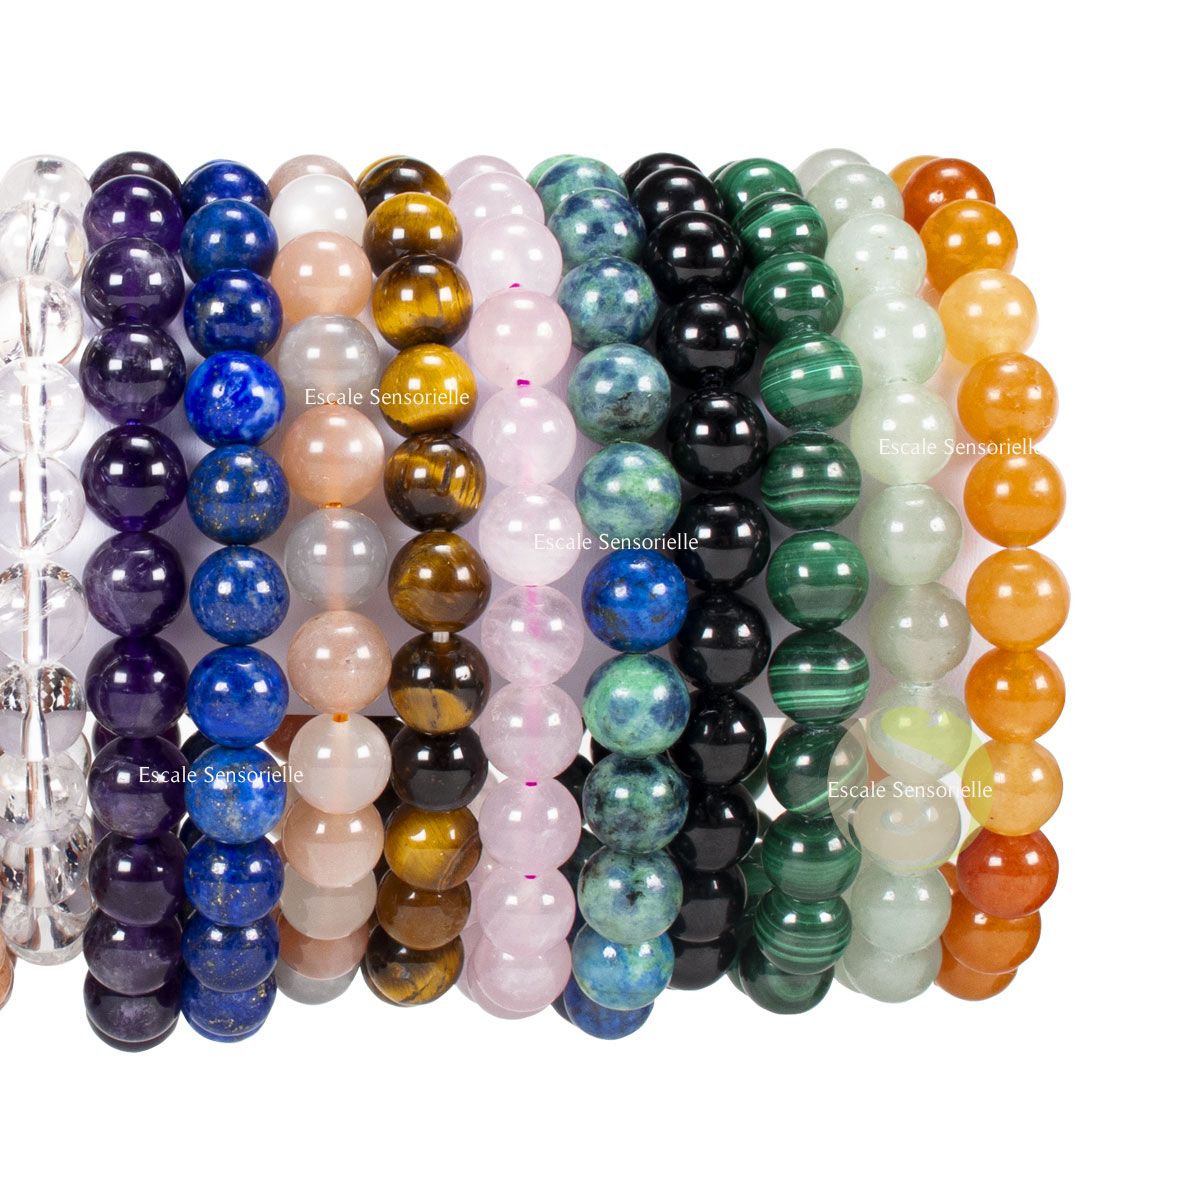 Bracelet élastique perles en bois et pierre de lune - Perles & Co